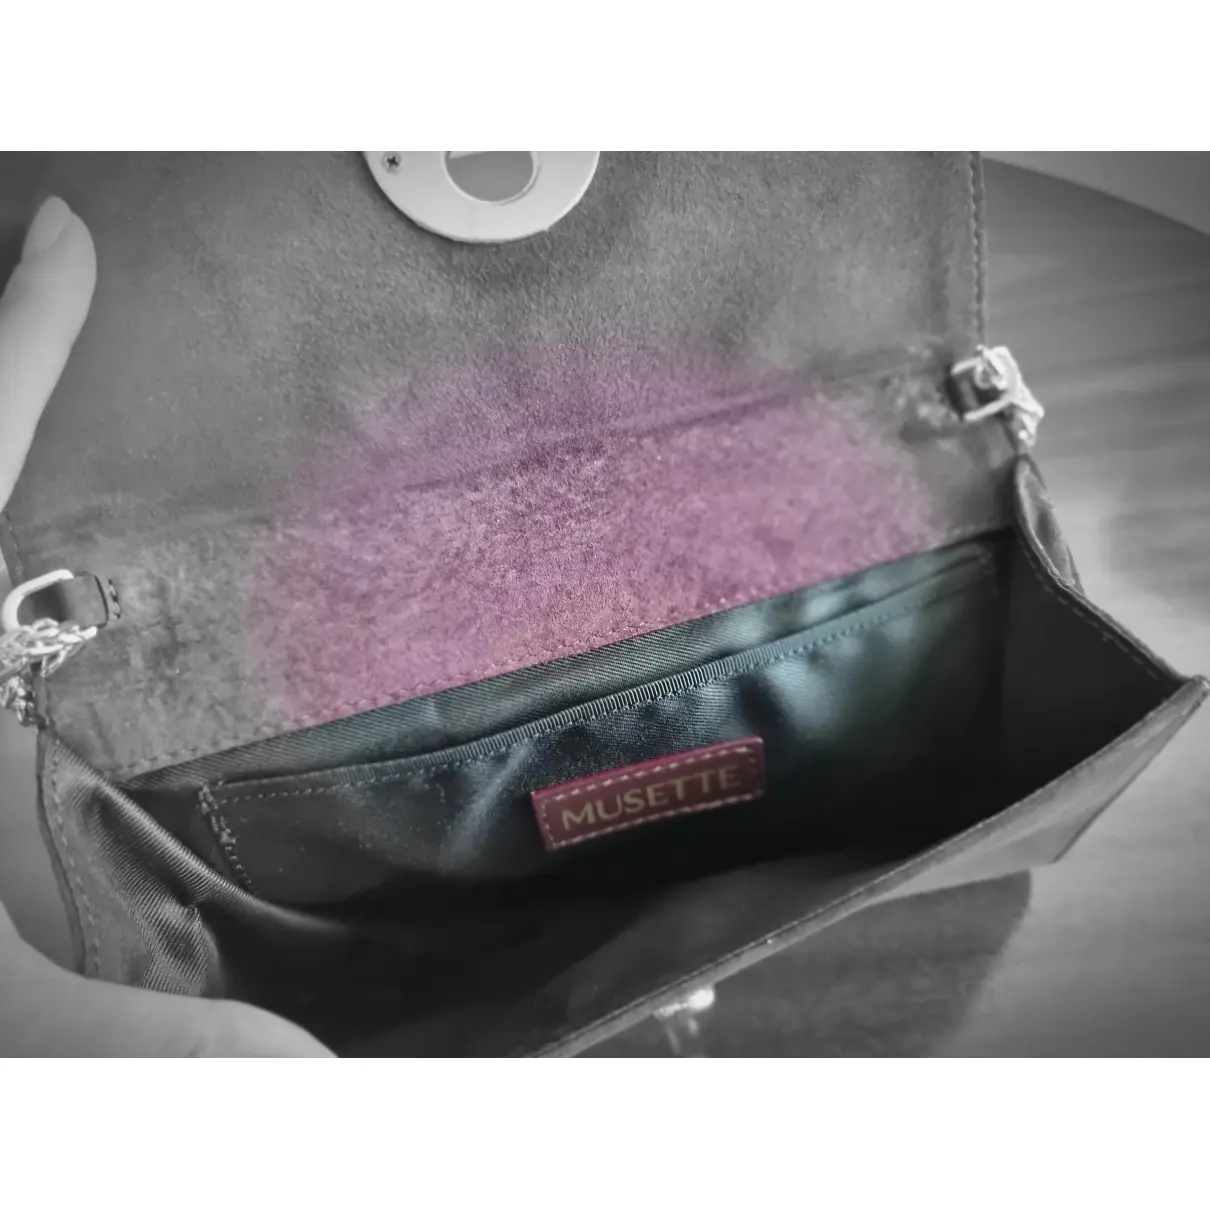 Buy MUSETTE Handbag online